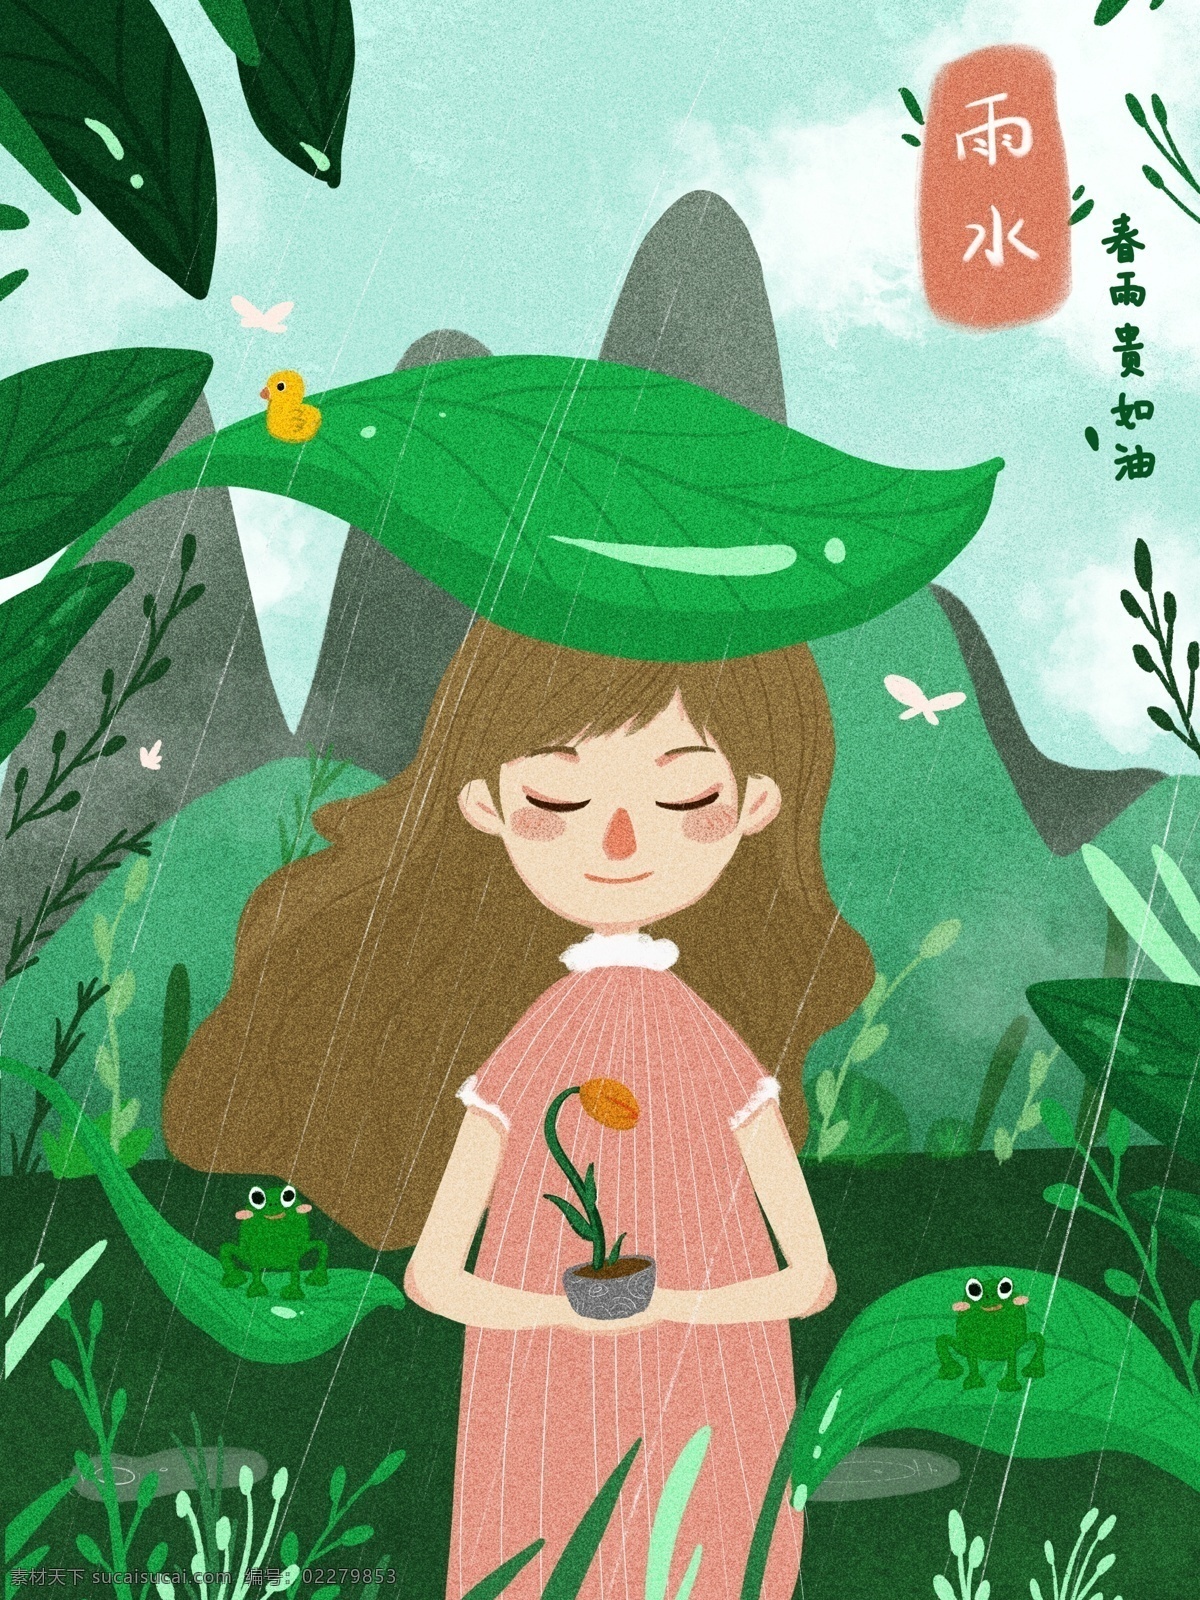 二十四节气 雨水 可爱 女孩 温馨 小 清新 插画 叶子 绿色 小清新 节气 树 春天 雨